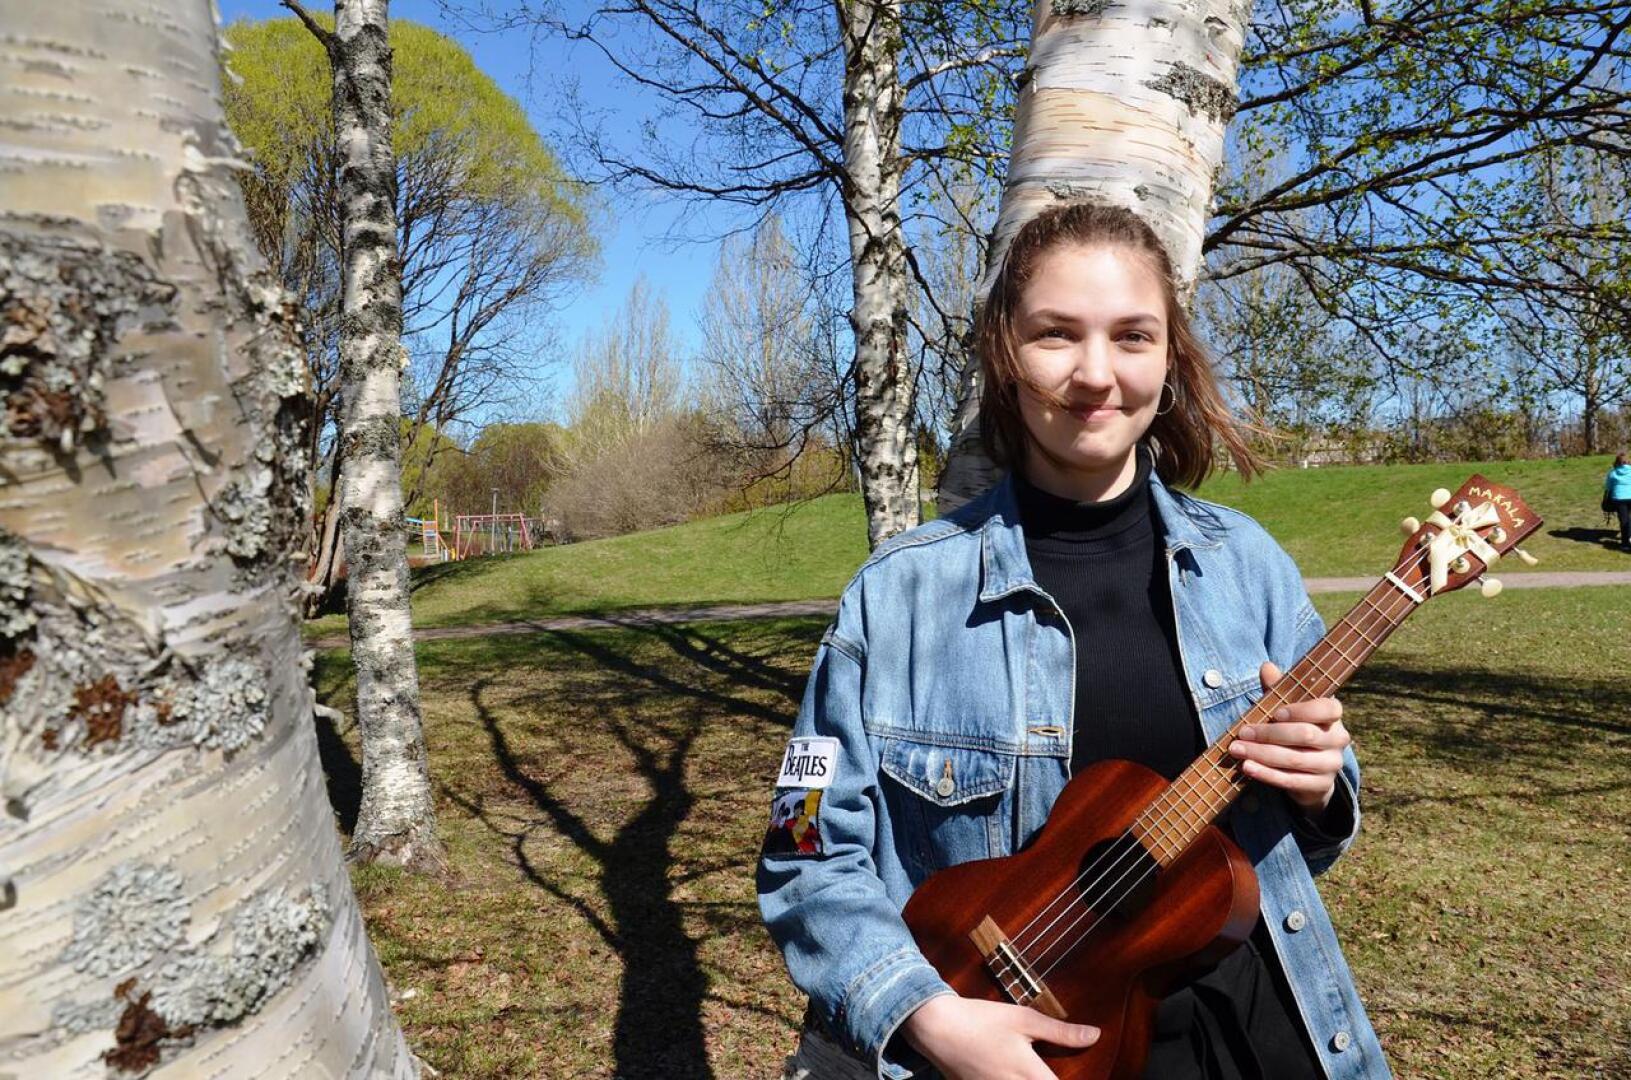 Tekla Knuutilan sydäntä lähellä on kulttuuriala. Näyttelemisen lisäksi Tekla harrastaa musiikkia ja oma soitin on fagotti. Hän soittaa muitakin soittimia, kuten tinapillejä sekä ukulelea.